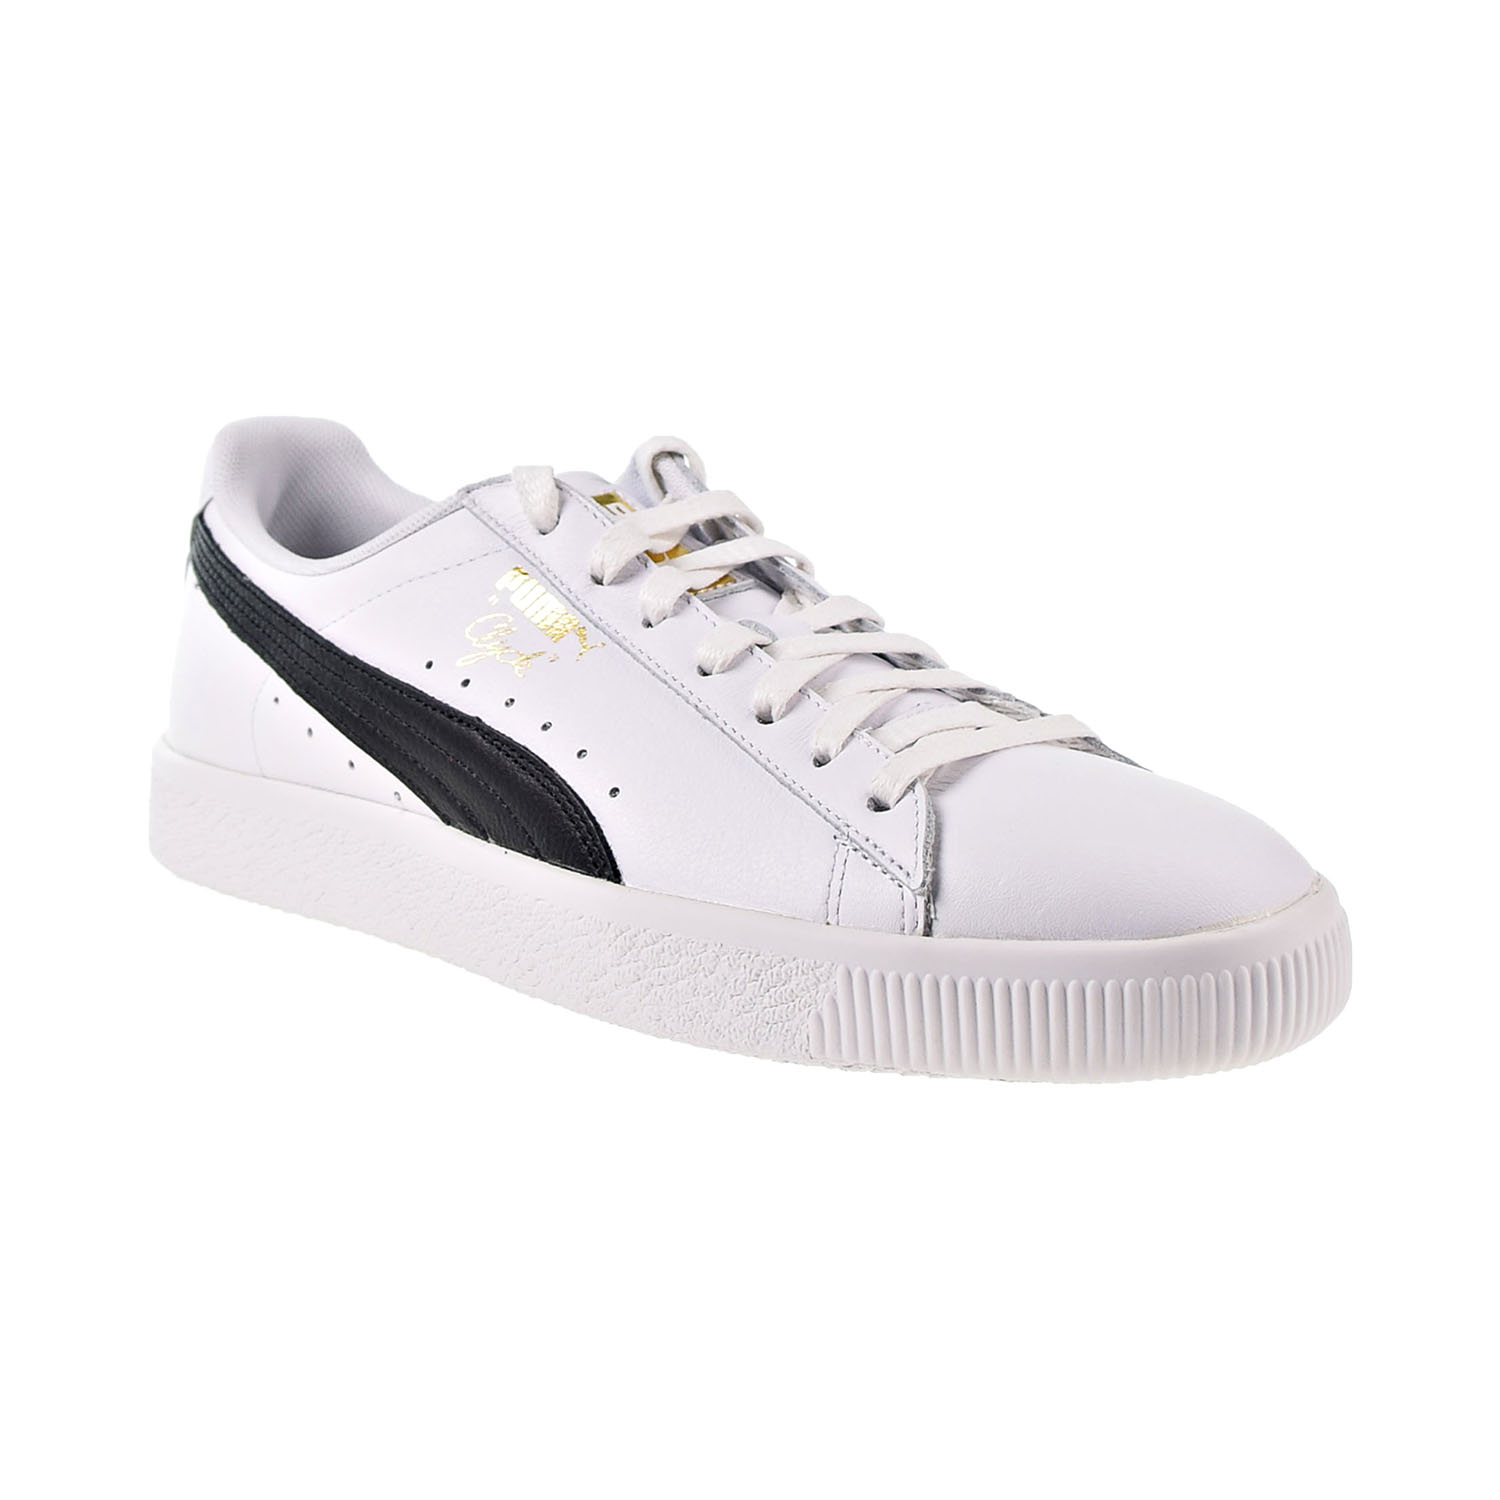 Puma Clyde Core Leather Foil Men's Shoes White-Black-Gold 364669-01 | eBay